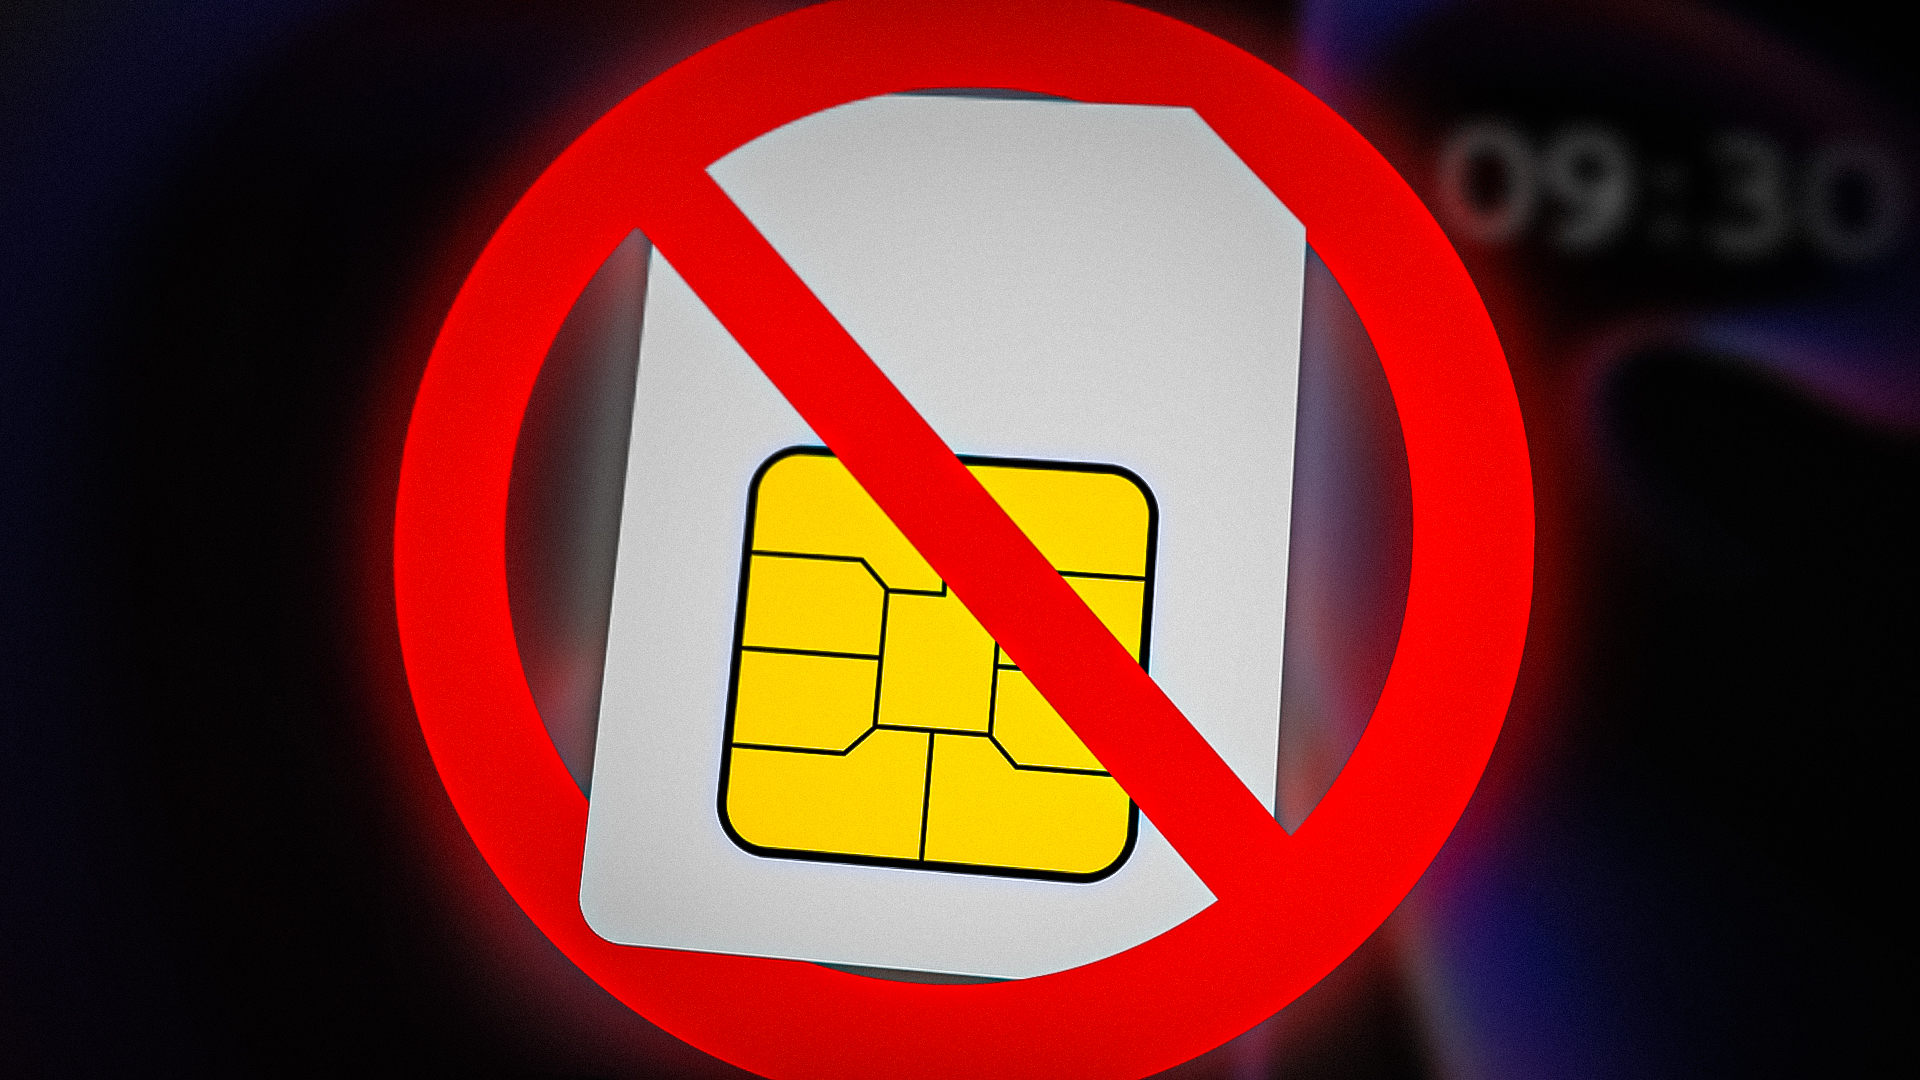 No SIM Card Detected